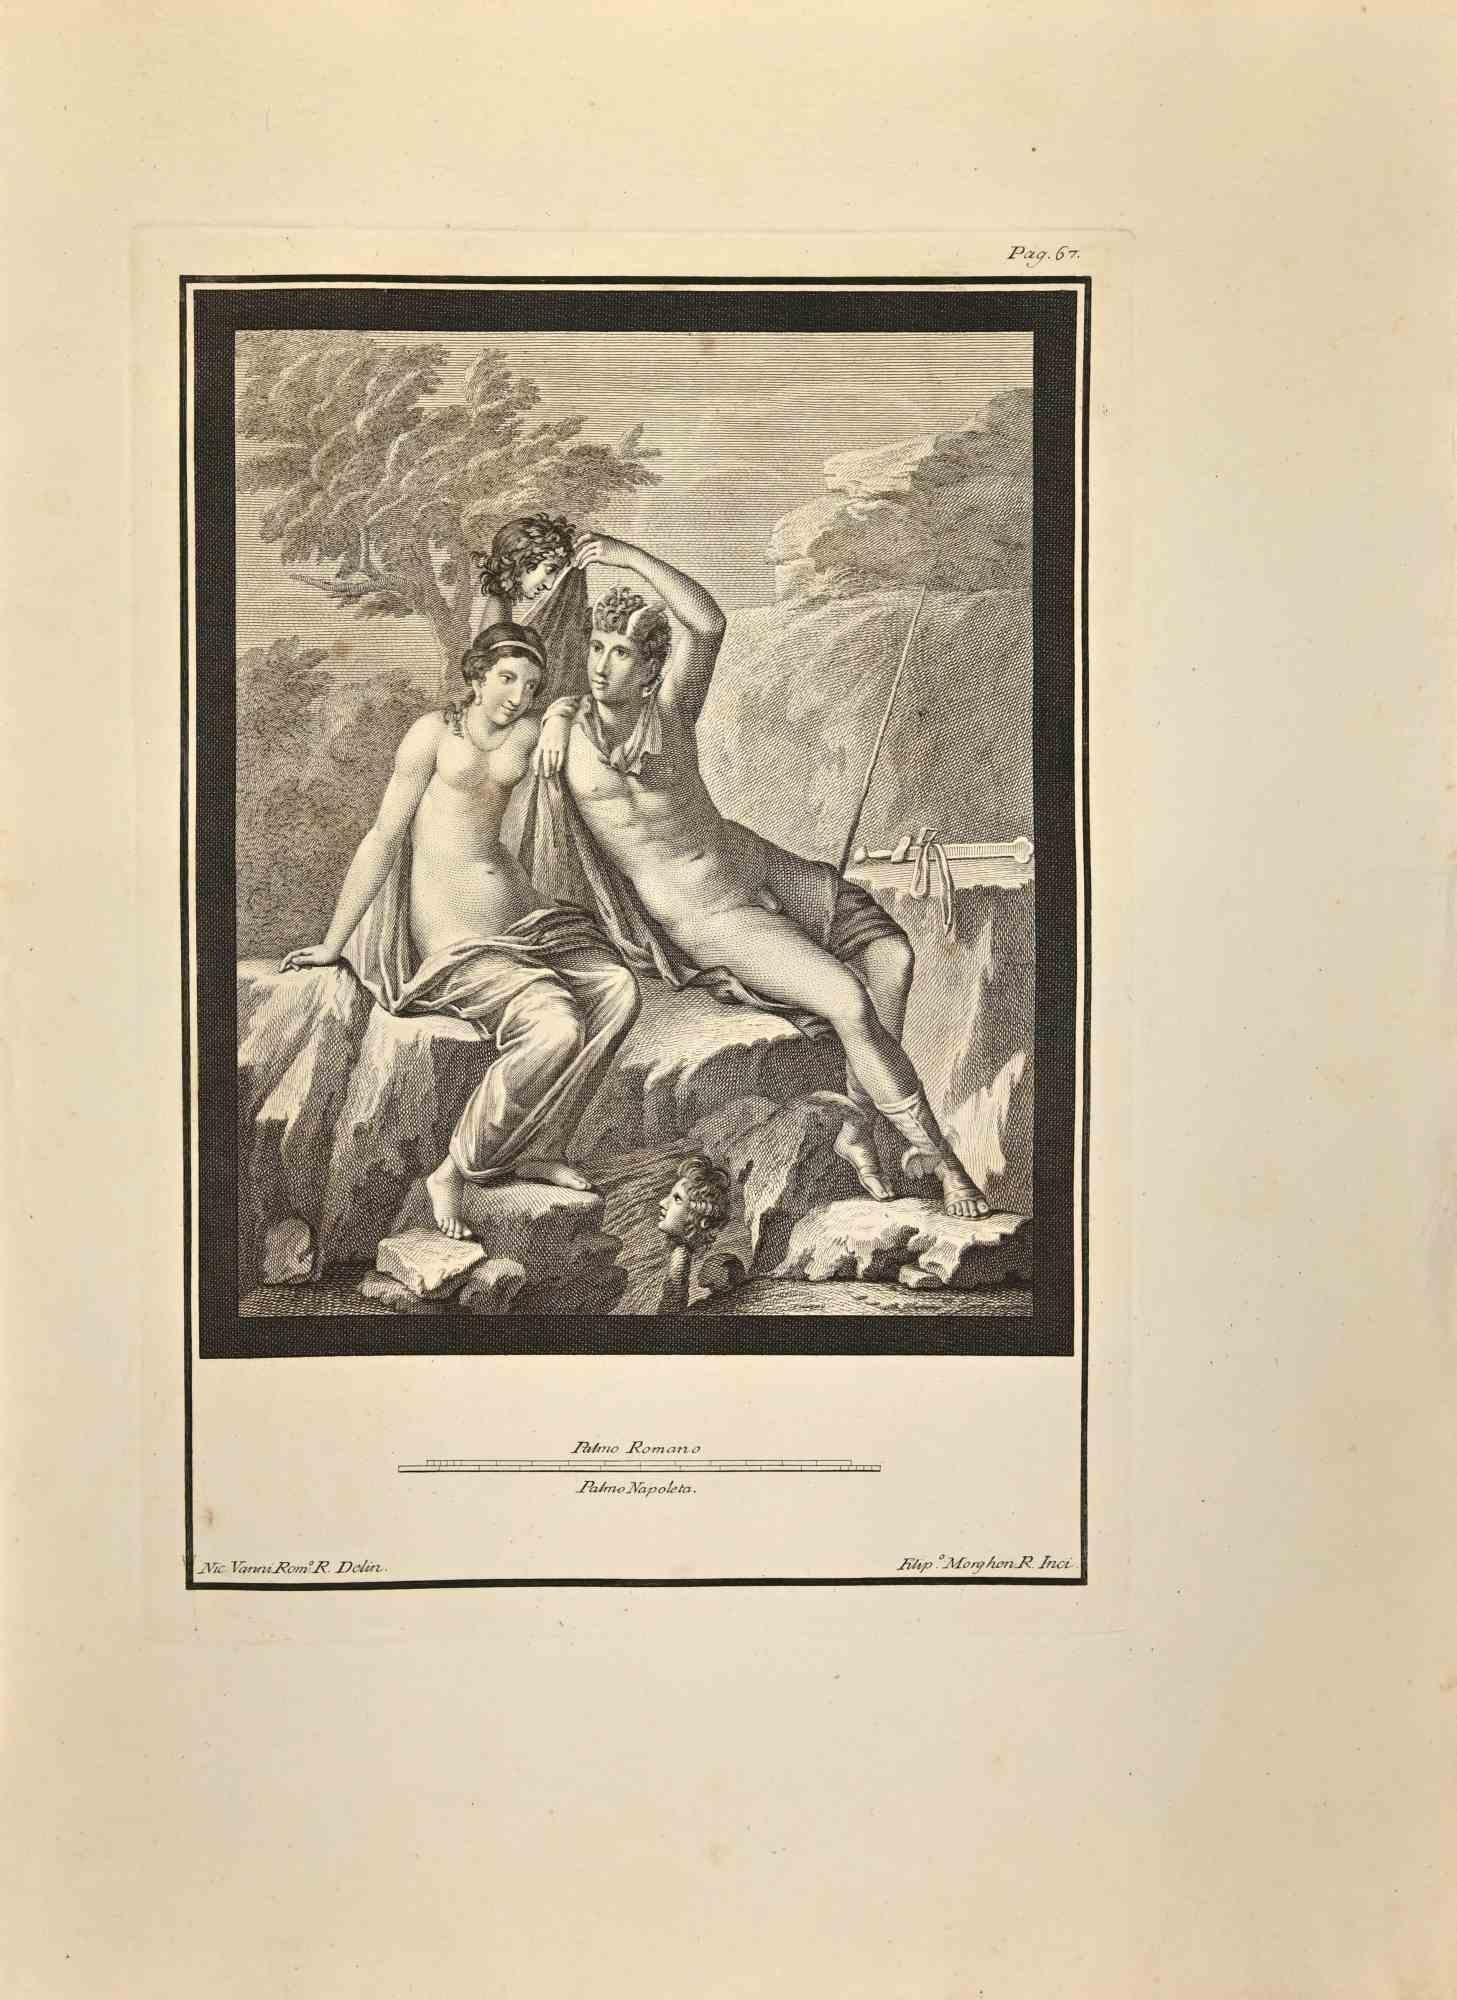 Hermès Dieu et Nymphe des "Antiquités d'Herculanum" est une gravure sur papier réalisée par Filippo Morghen au 18ème siècle.

Signé sur la plaque.

Bon état avec quelques pliures.

La gravure appartient à la suite d'estampes "Antiquités d'Herculanum